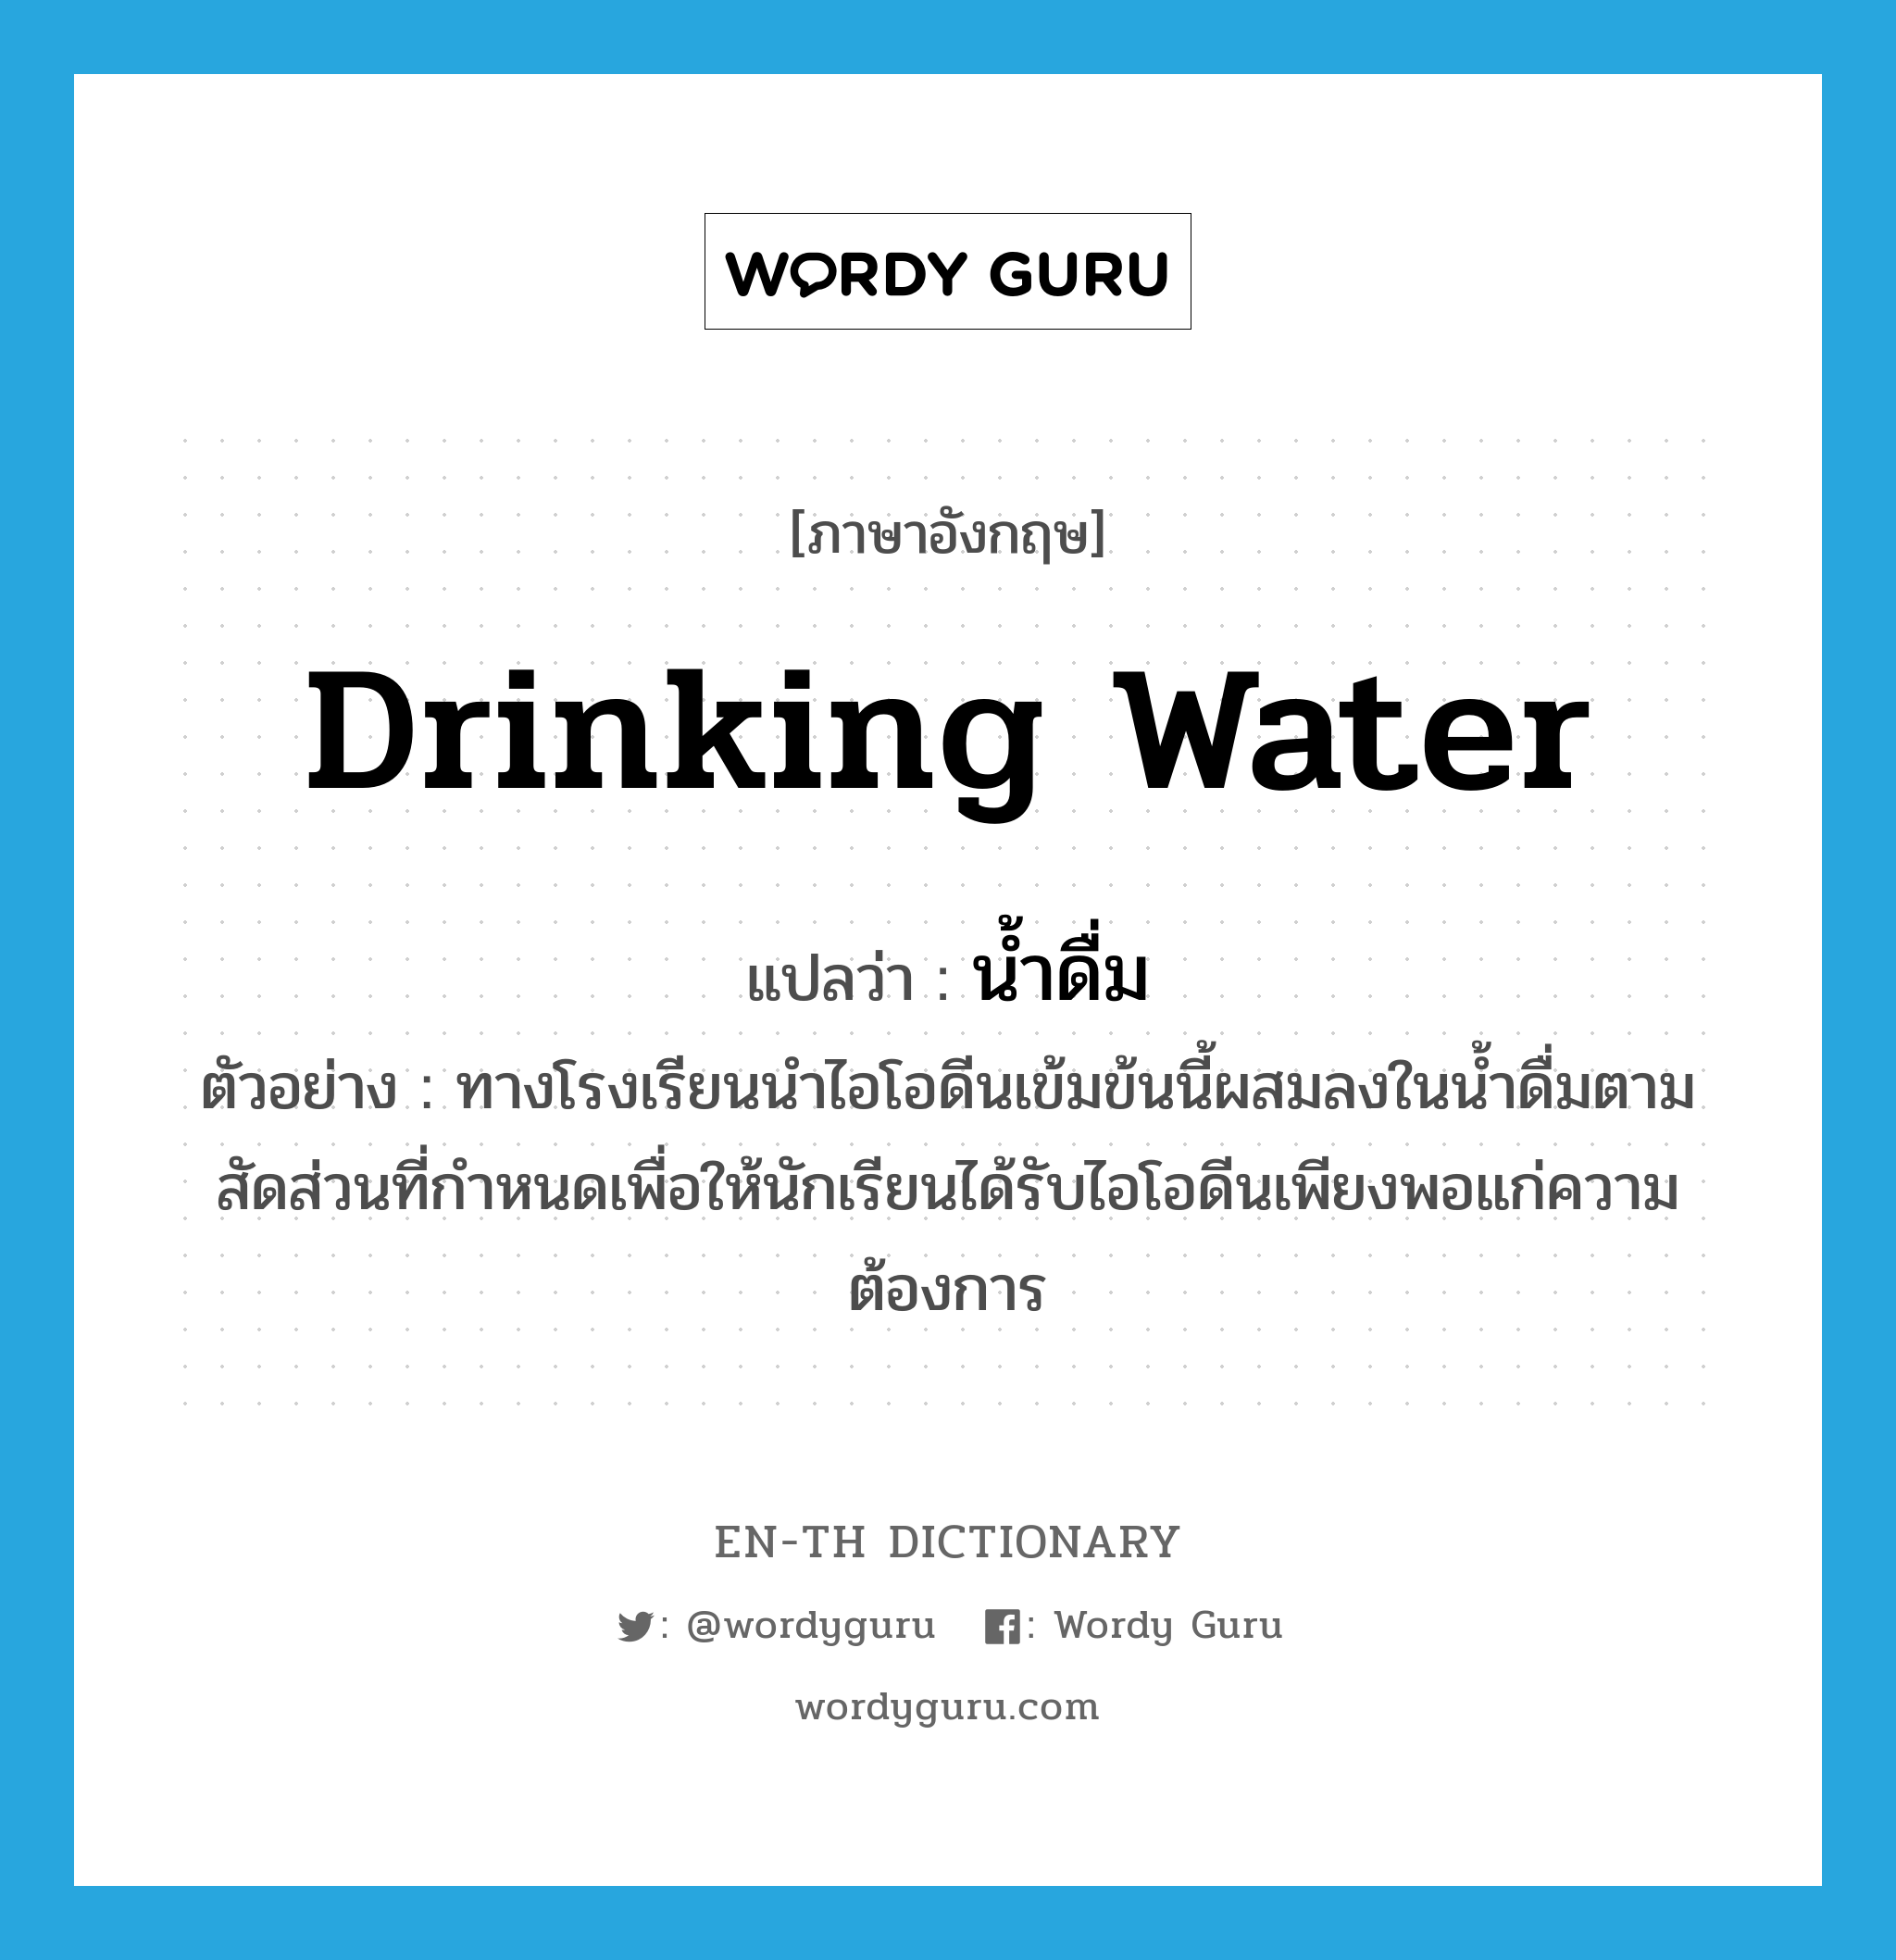 น้ำดื่ม ภาษาอังกฤษ?, คำศัพท์ภาษาอังกฤษ น้ำดื่ม แปลว่า drinking water ประเภท N ตัวอย่าง ทางโรงเรียนนำไอโอดีนเข้มข้นนี้ผสมลงในน้ำดื่มตามสัดส่วนที่กำหนดเพื่อให้นักเรียนได้รับไอโอดีนเพียงพอแก่ความต้องการ หมวด N